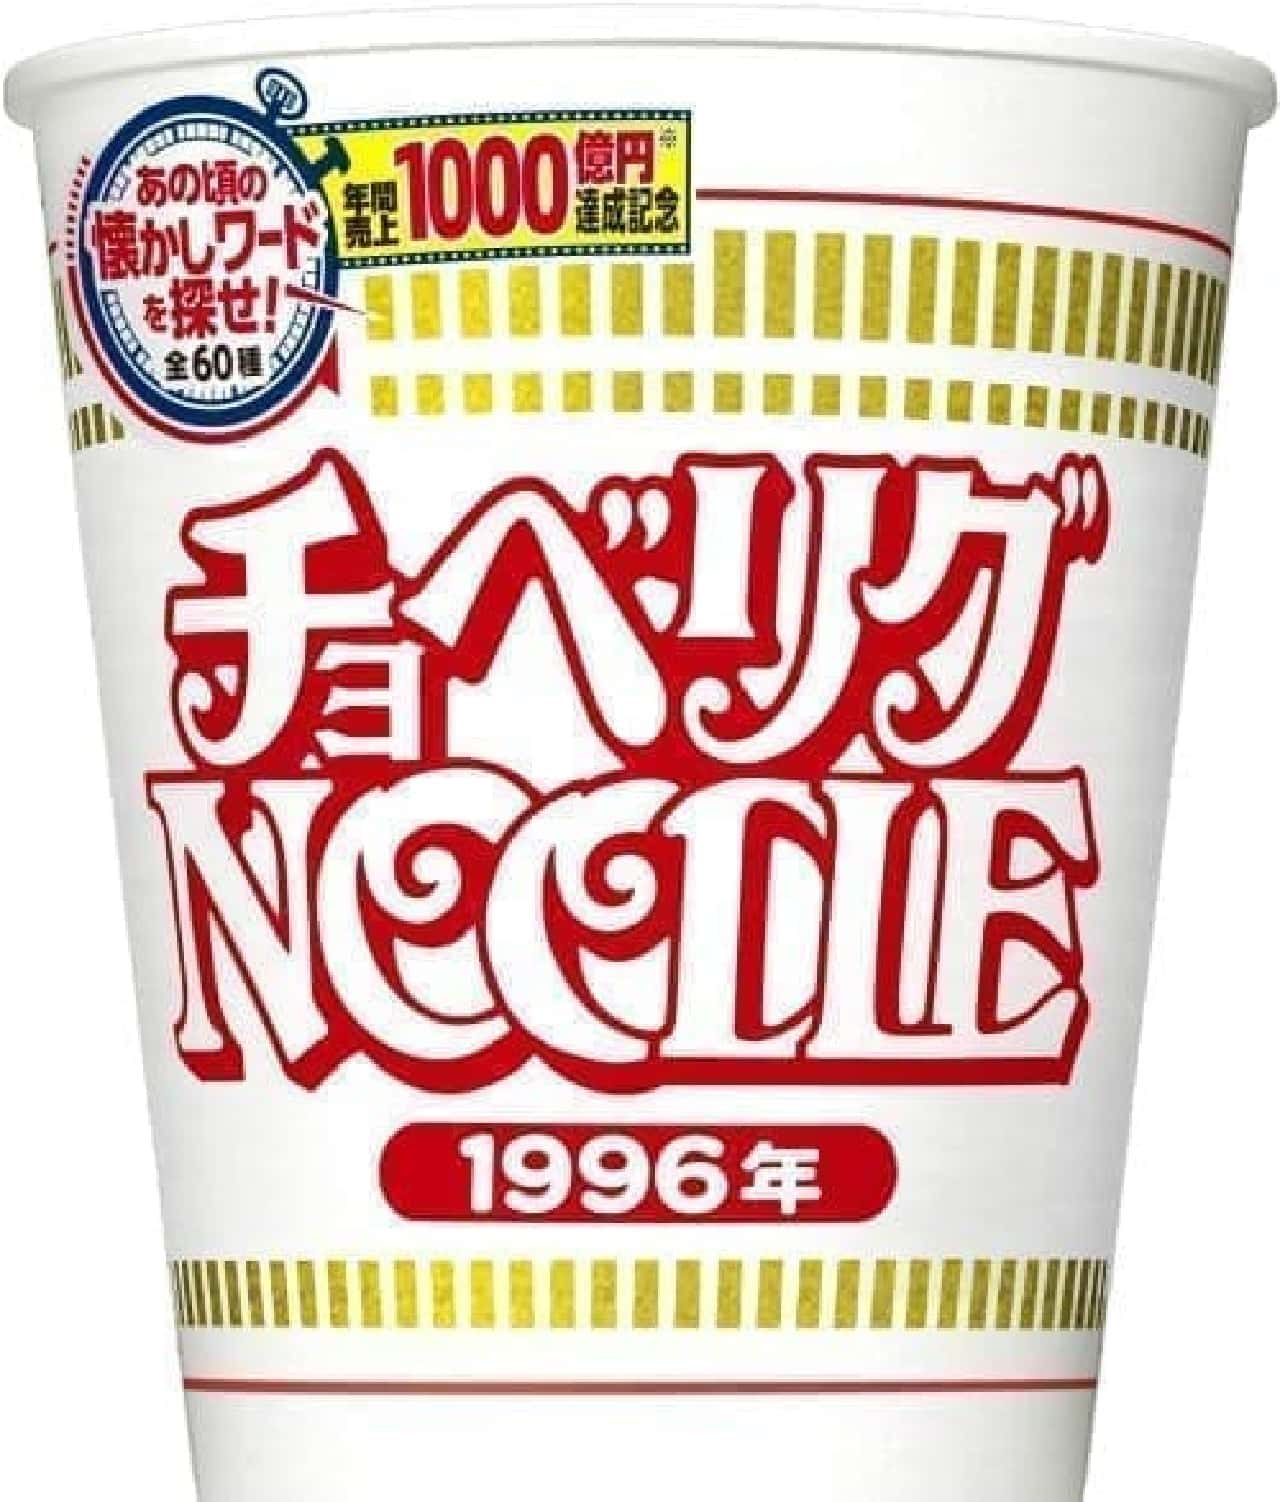 Cup noodle 100 billion yen commemorative package